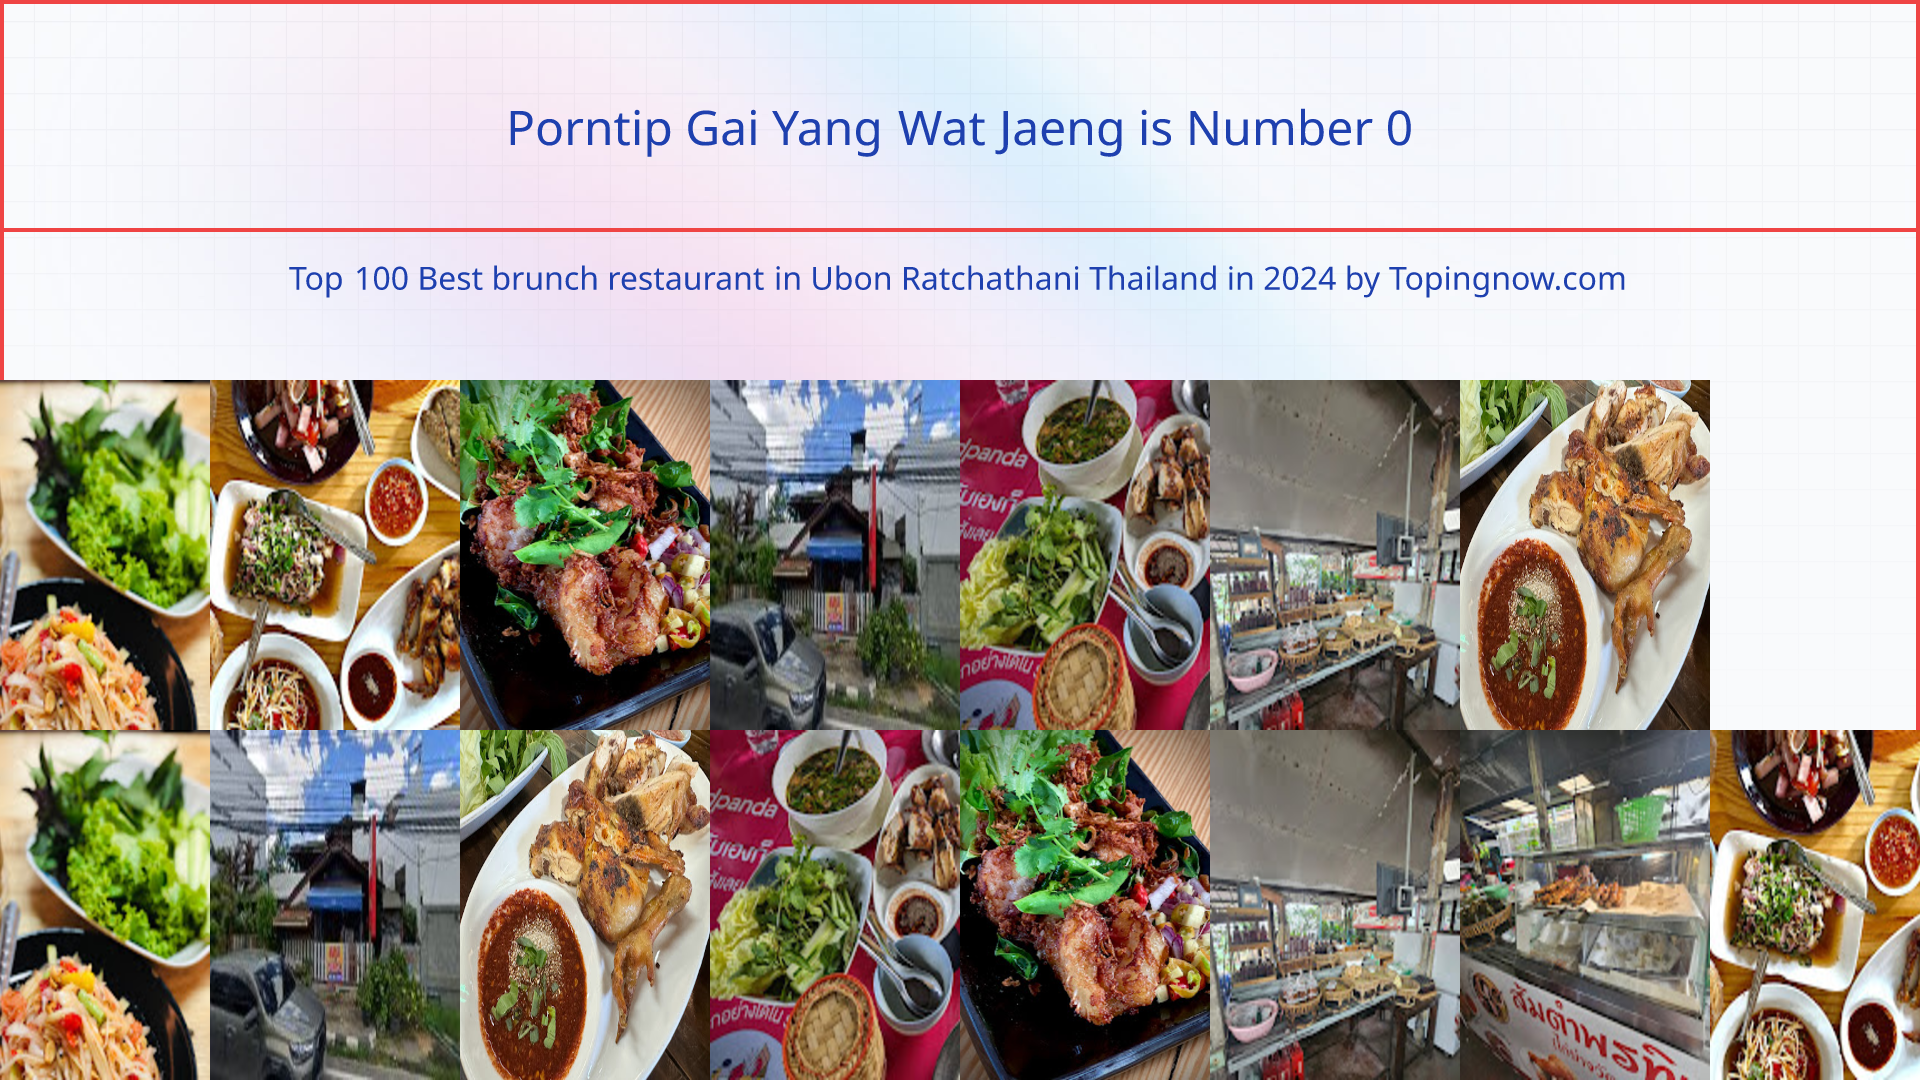 Porntip Gai Yang Wat Jaeng: Top 100 Best brunch restaurant in Ubon Ratchathani Thailand in 2024